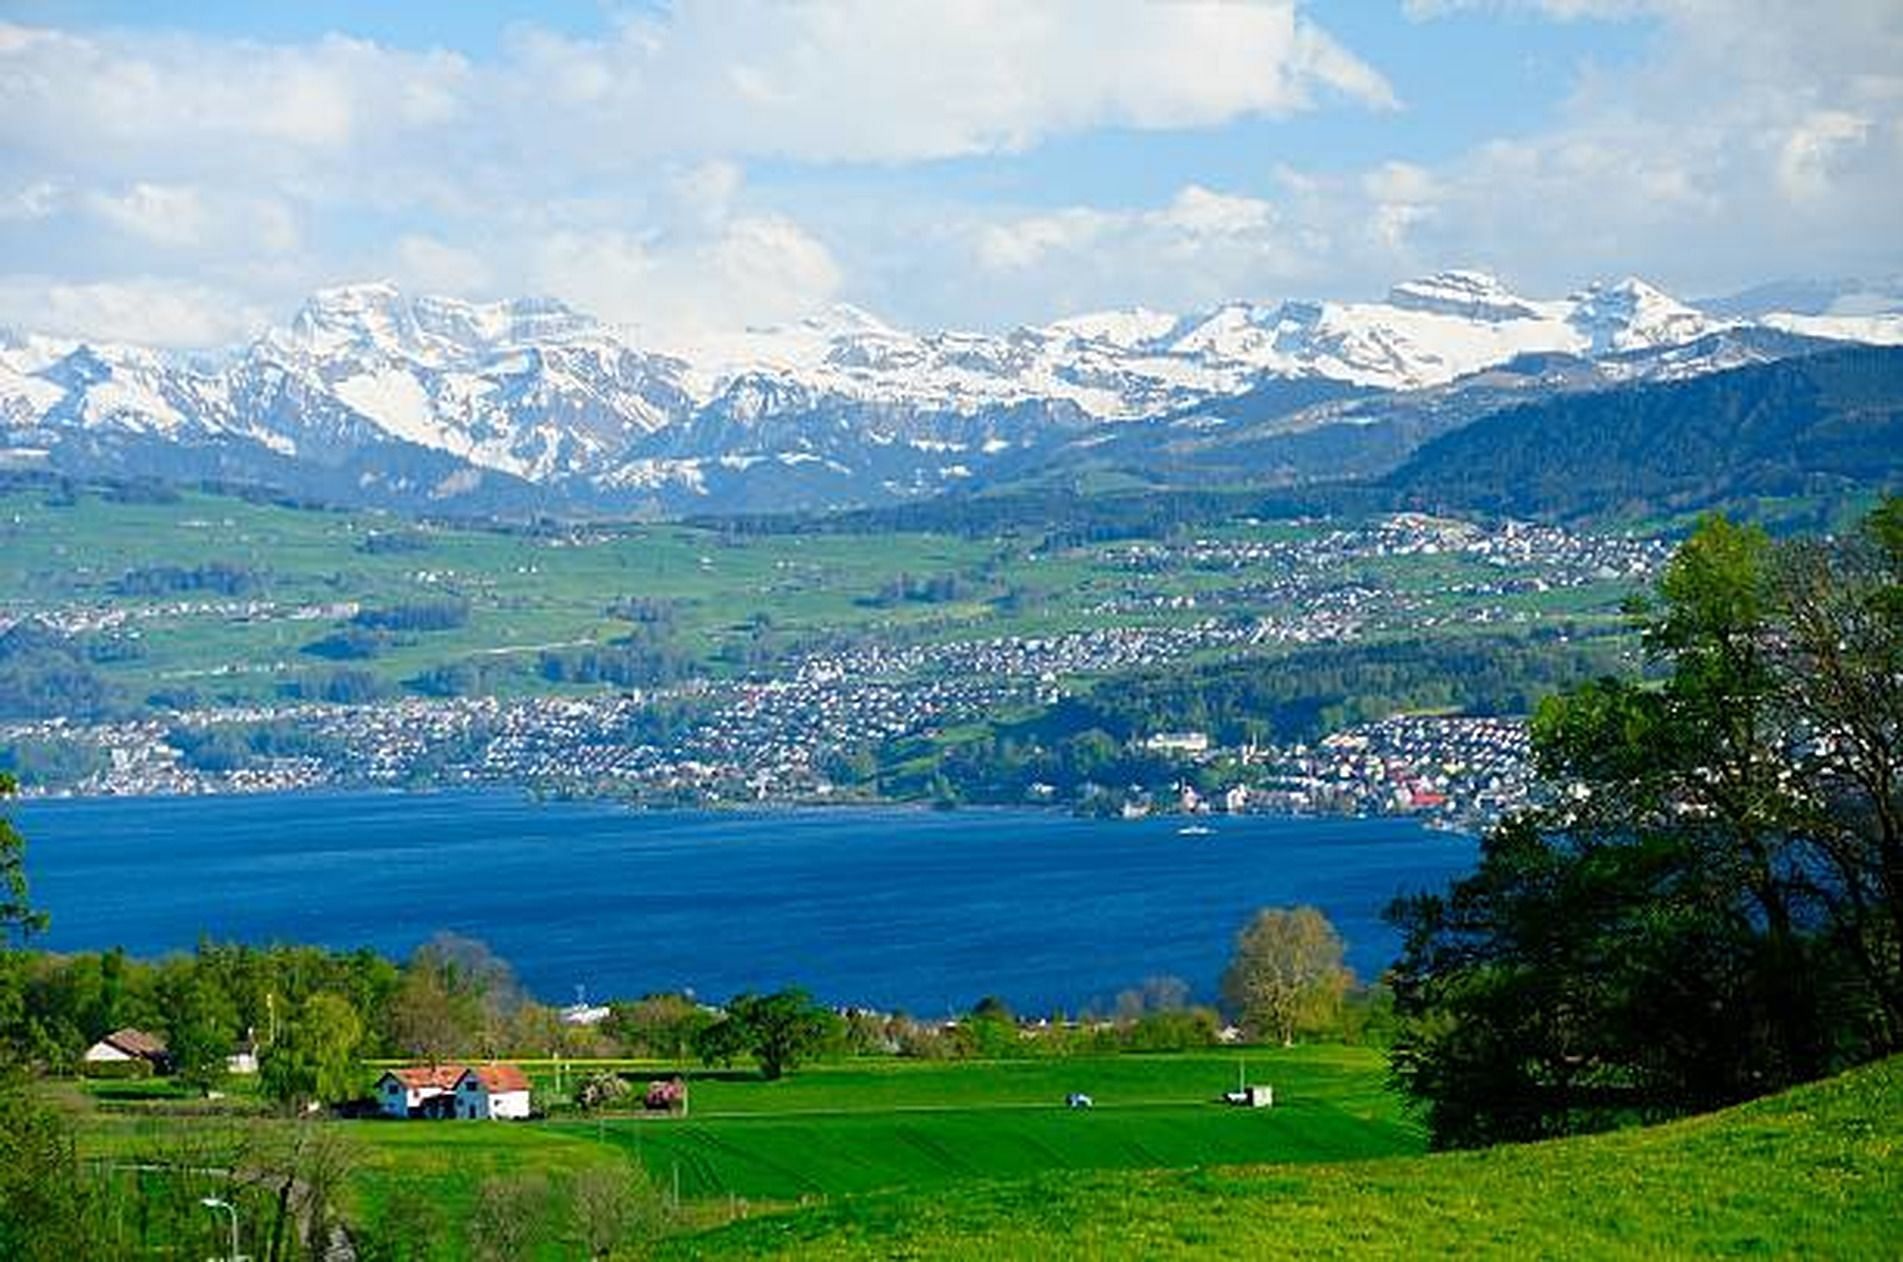 Town of Herrilberg in Switzerland overlooking the Swiss Alps